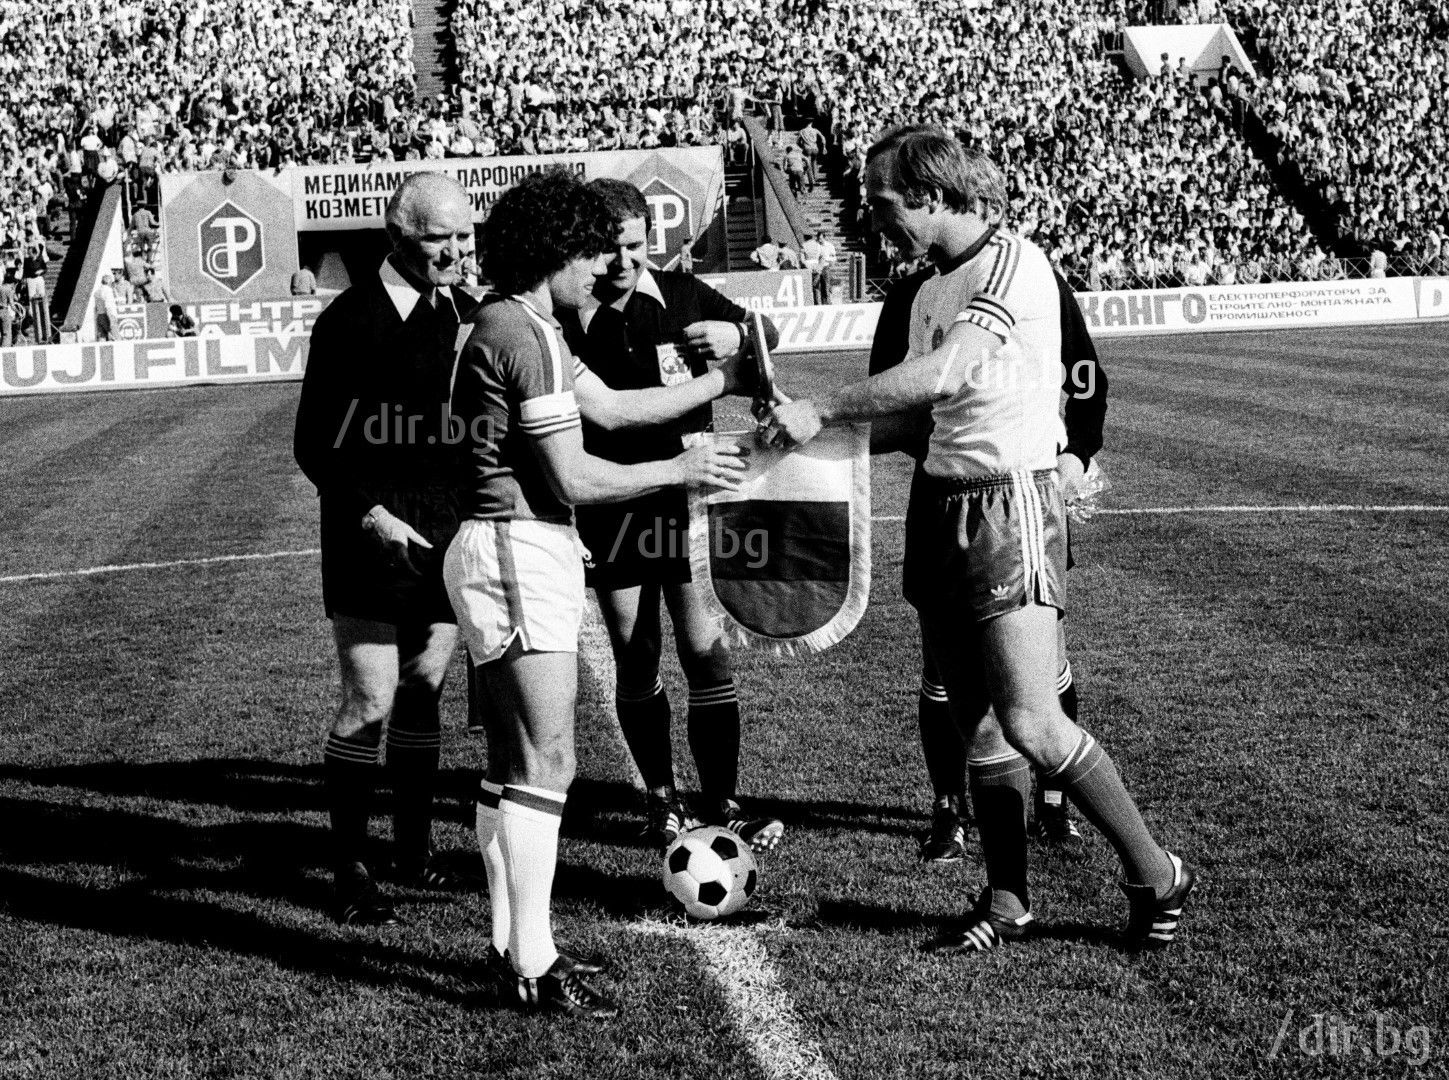 Капитаните Кевин Кийгън и Кирил Ивков преди старта на евроквалификацията в София от 1979-а. Разбиват ни с 3:0, Кийгън вкарва единия гол.